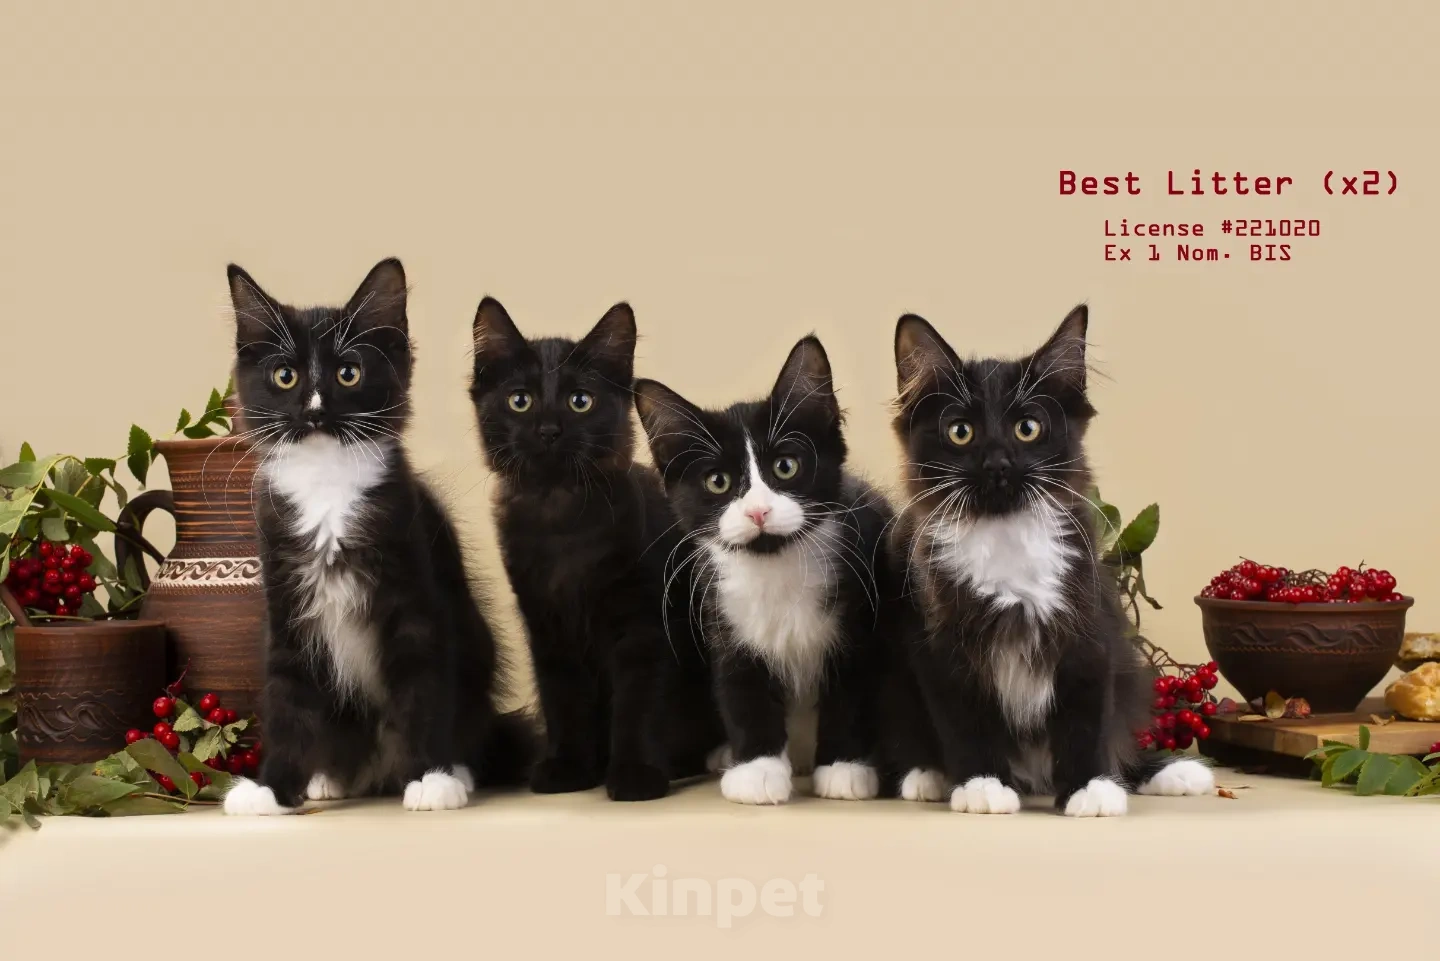 Породистые котята Карельского бобтейла - купить, продать или отдать на  Kinpet